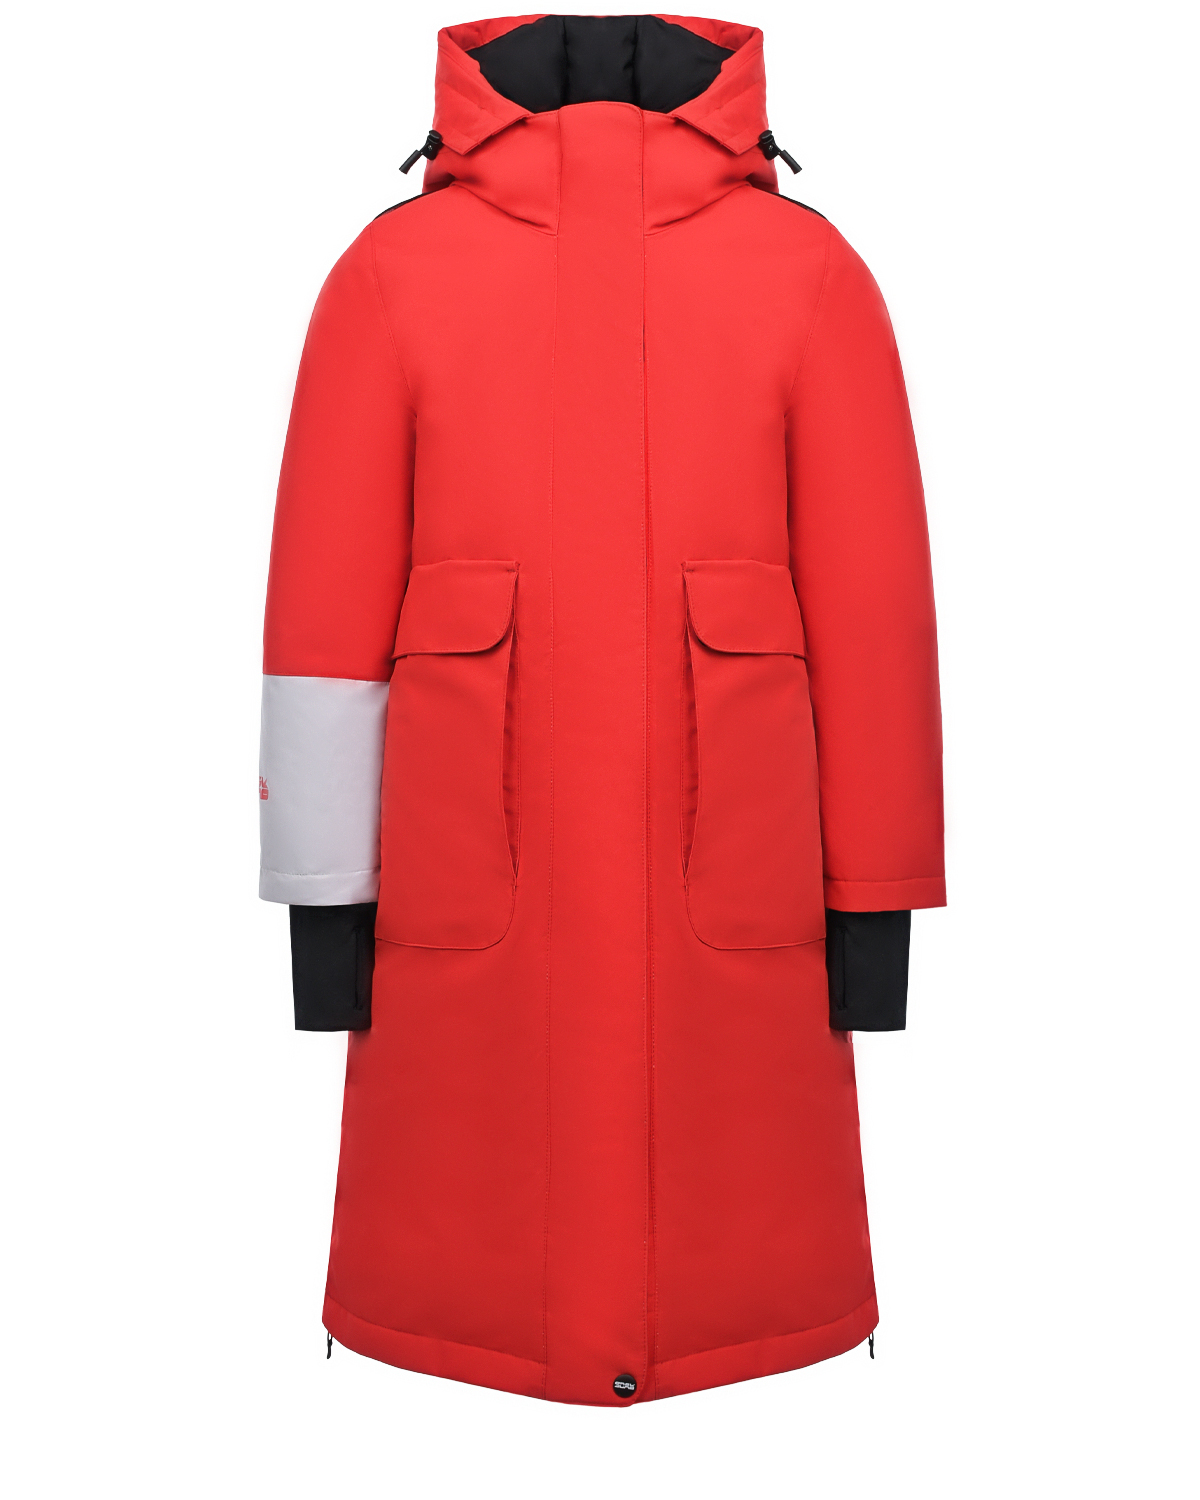 Красное пуховое пальто с капюшоном BASK детское